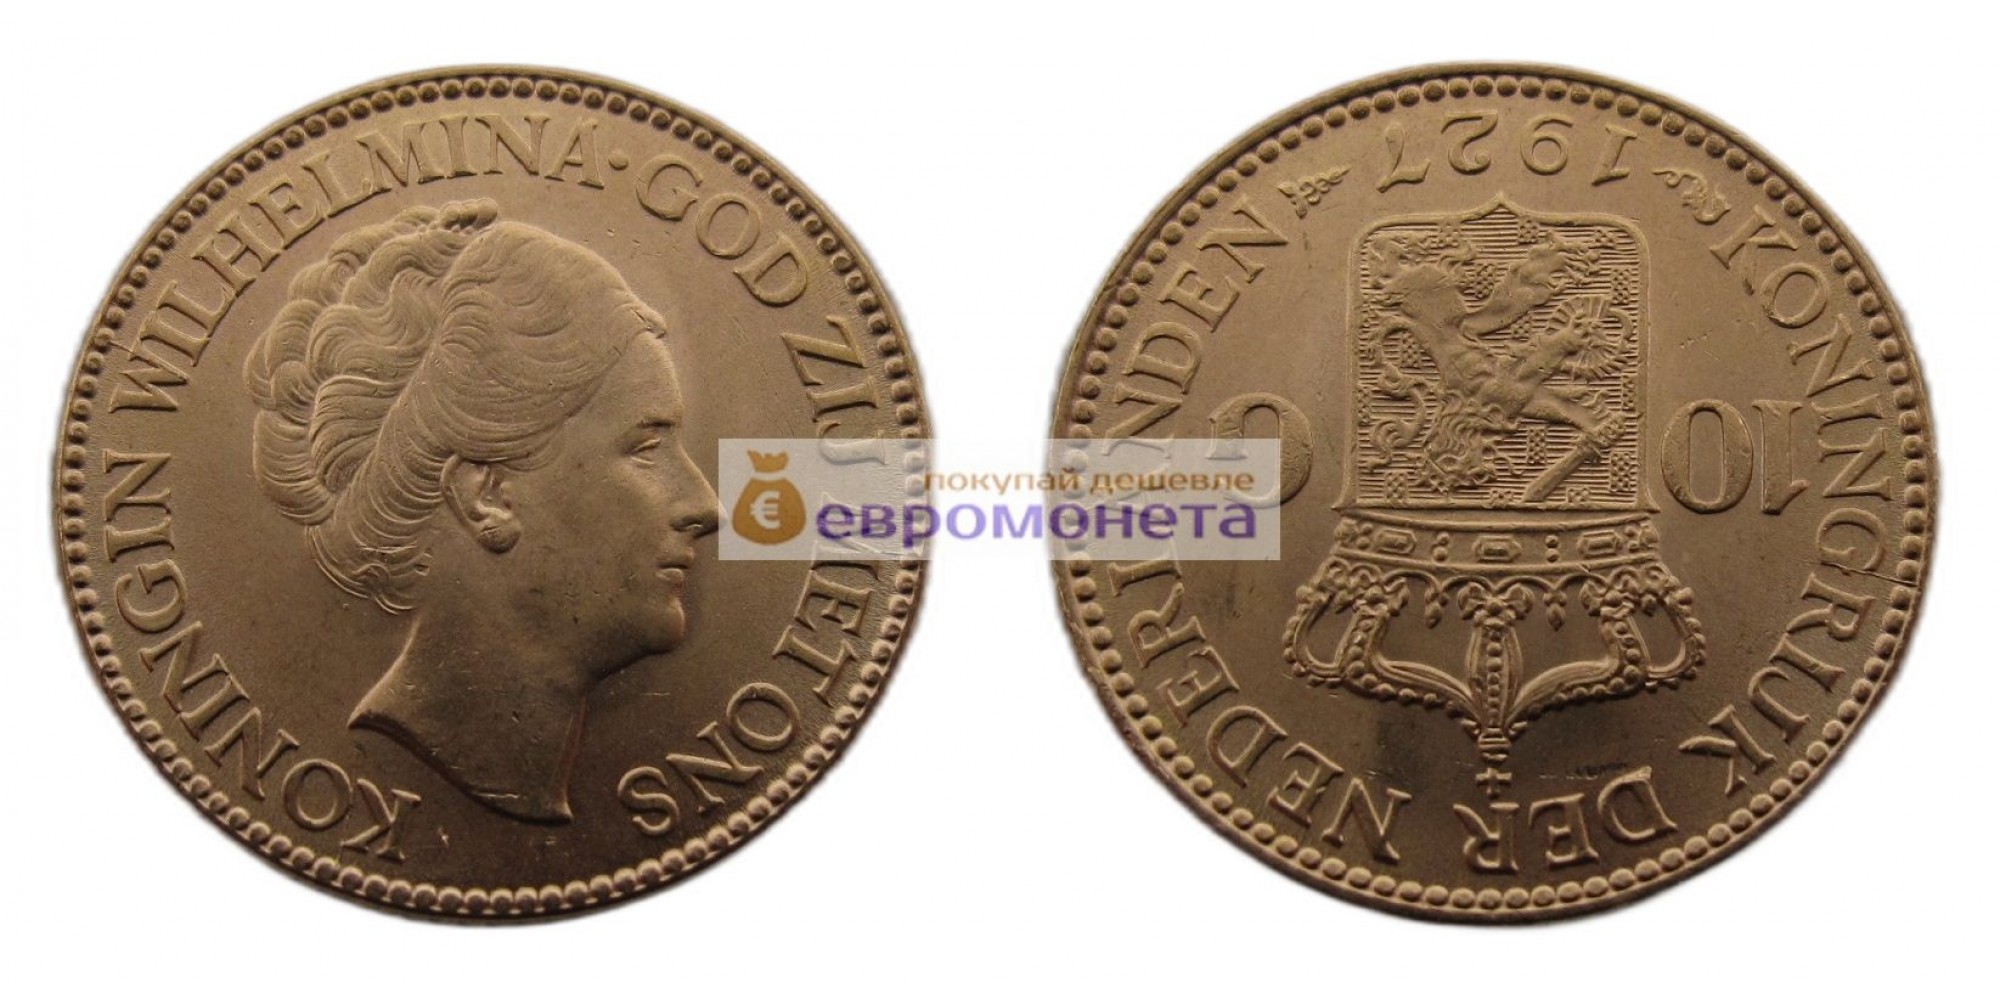 Нидерланды 10 гульденов 1927 год Королева Вильгельмина. Золото 900 проба, 6.73 грамм. АЦ (UNC)